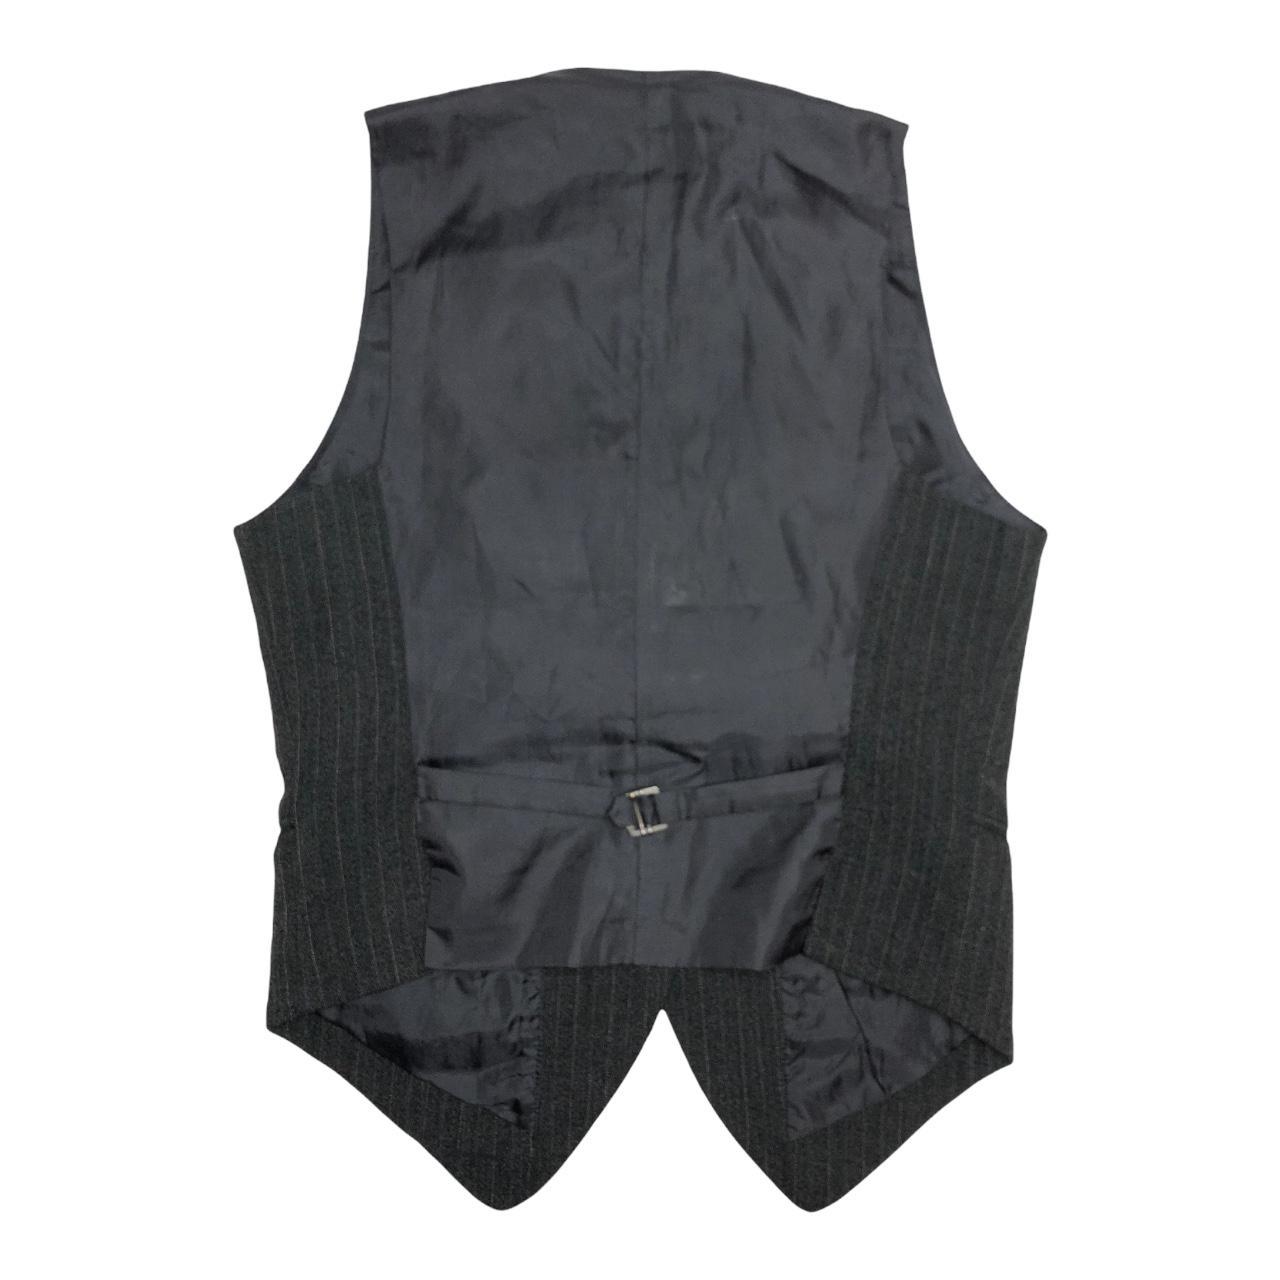 00s grey pinstripe waistcoat adjustable vest top... - Depop